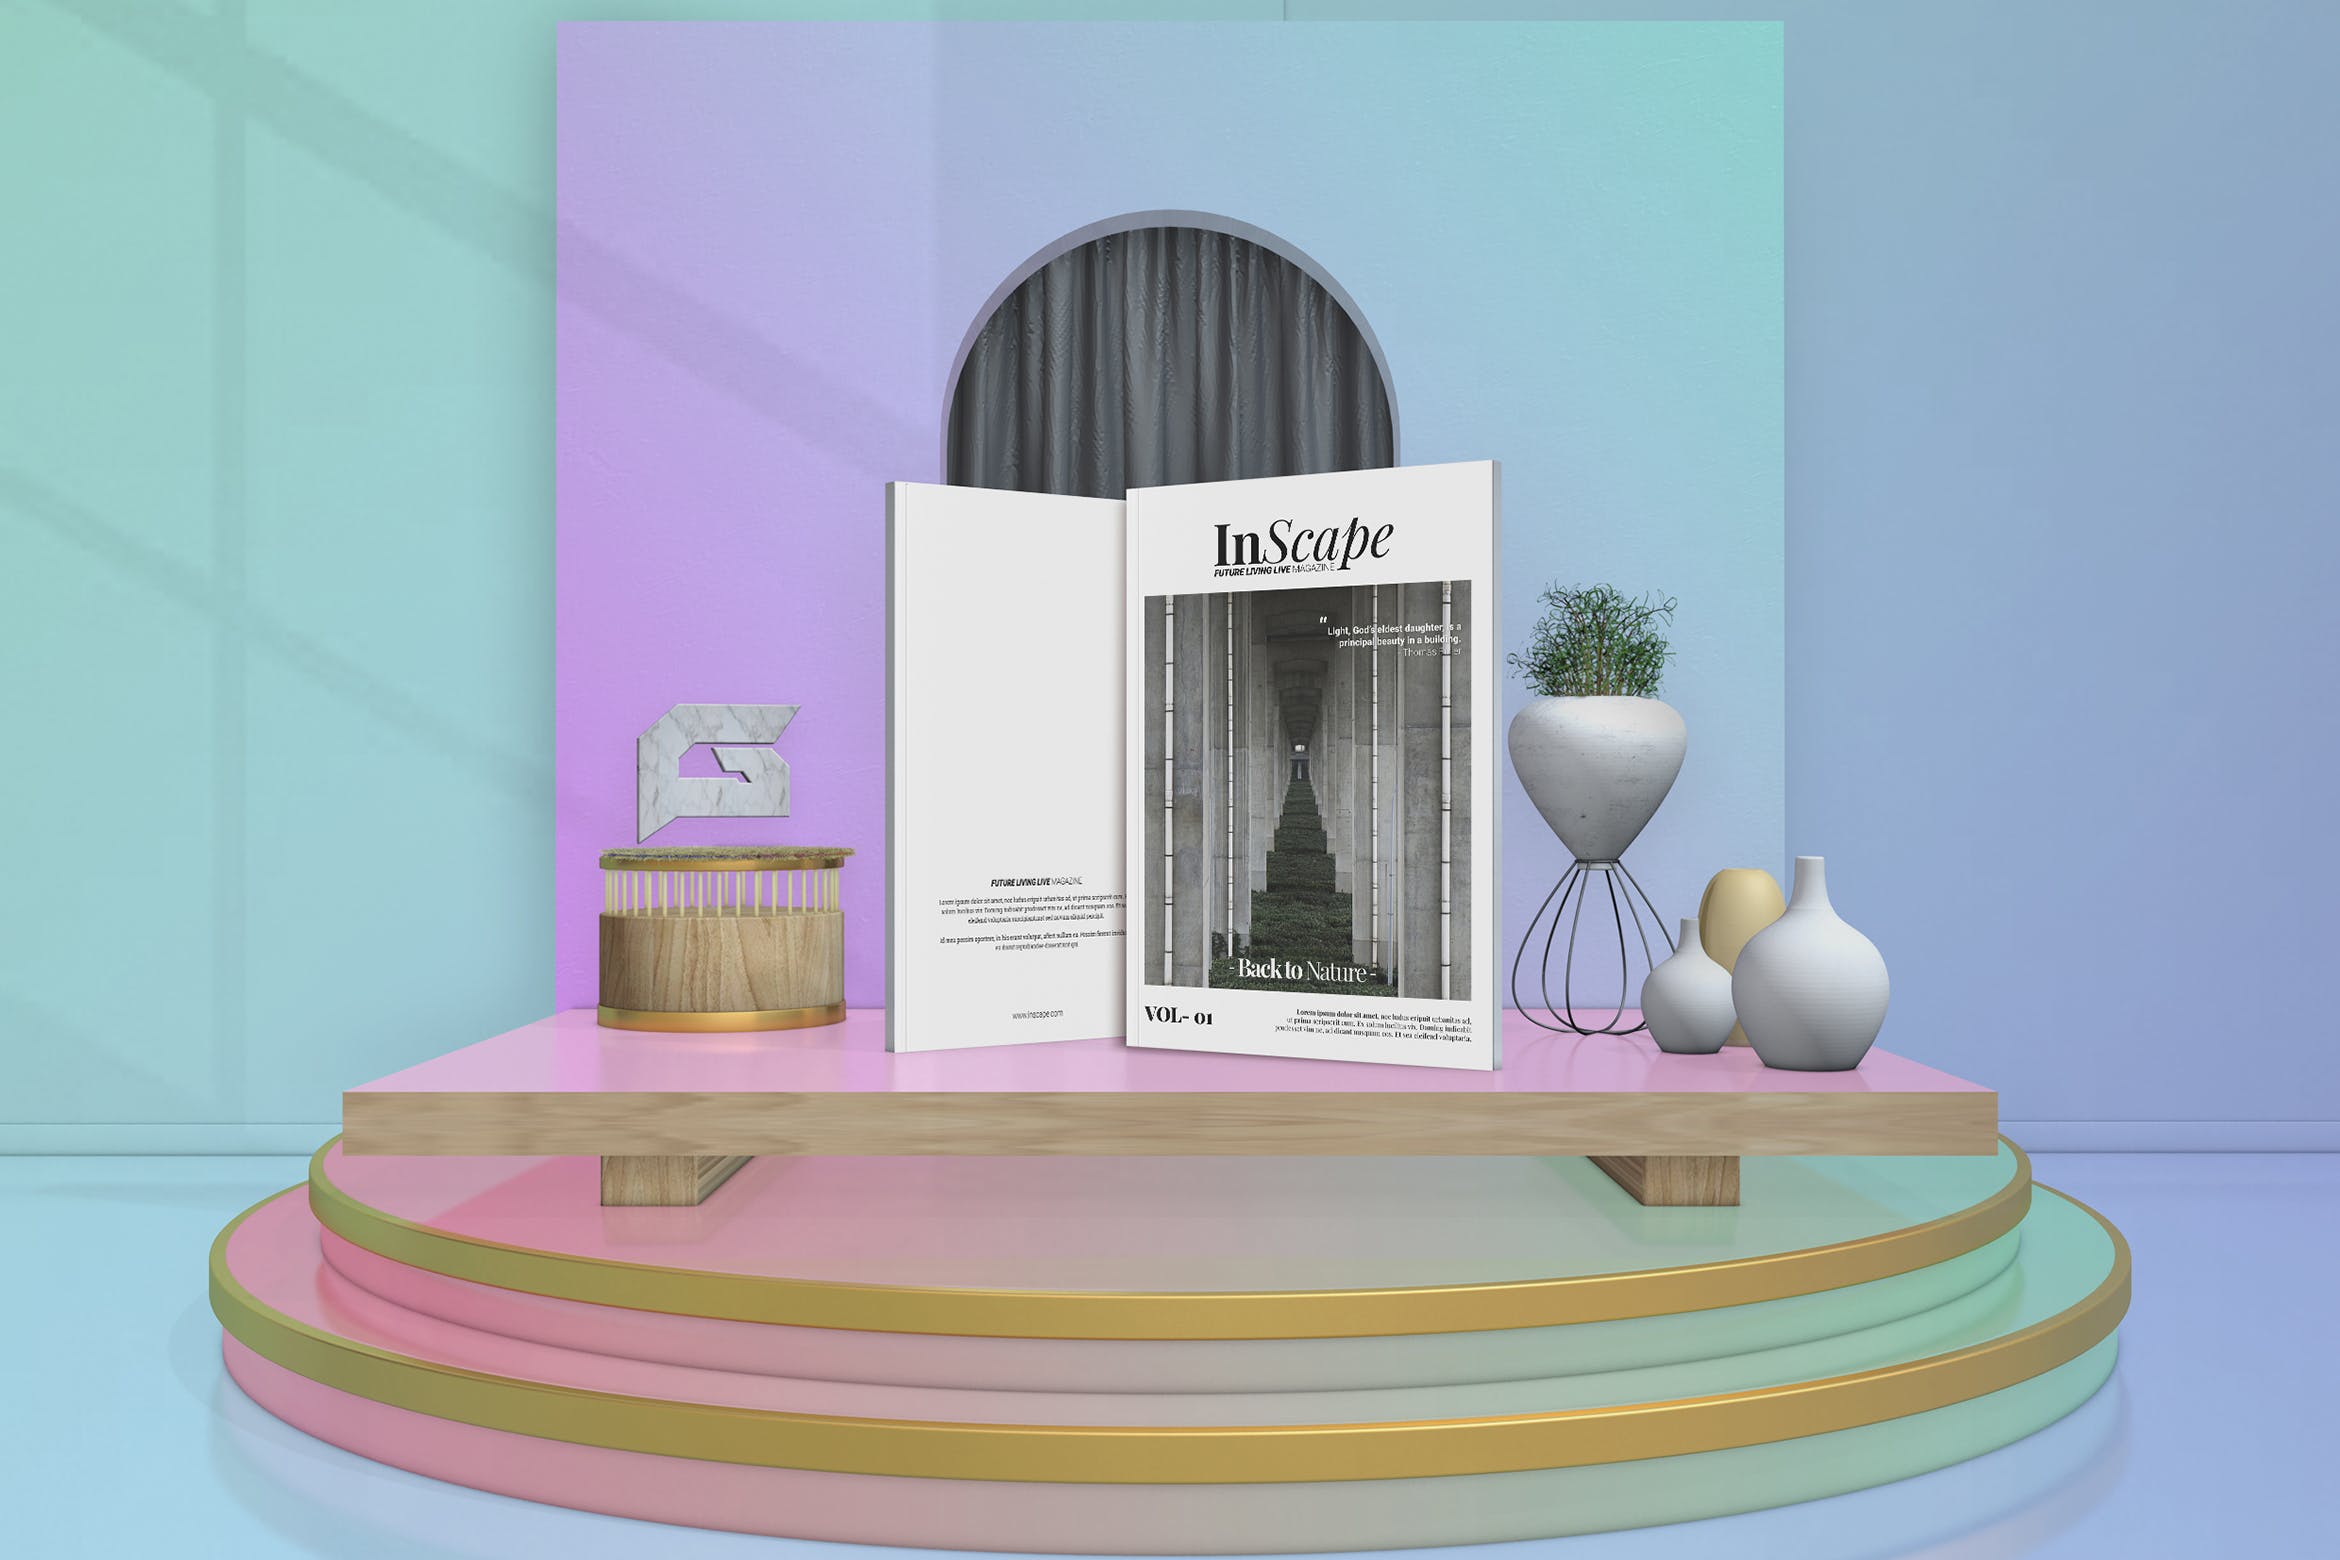 室内设计主题素材库精选杂志排版设计模板 Inscape Interior Magazine插图